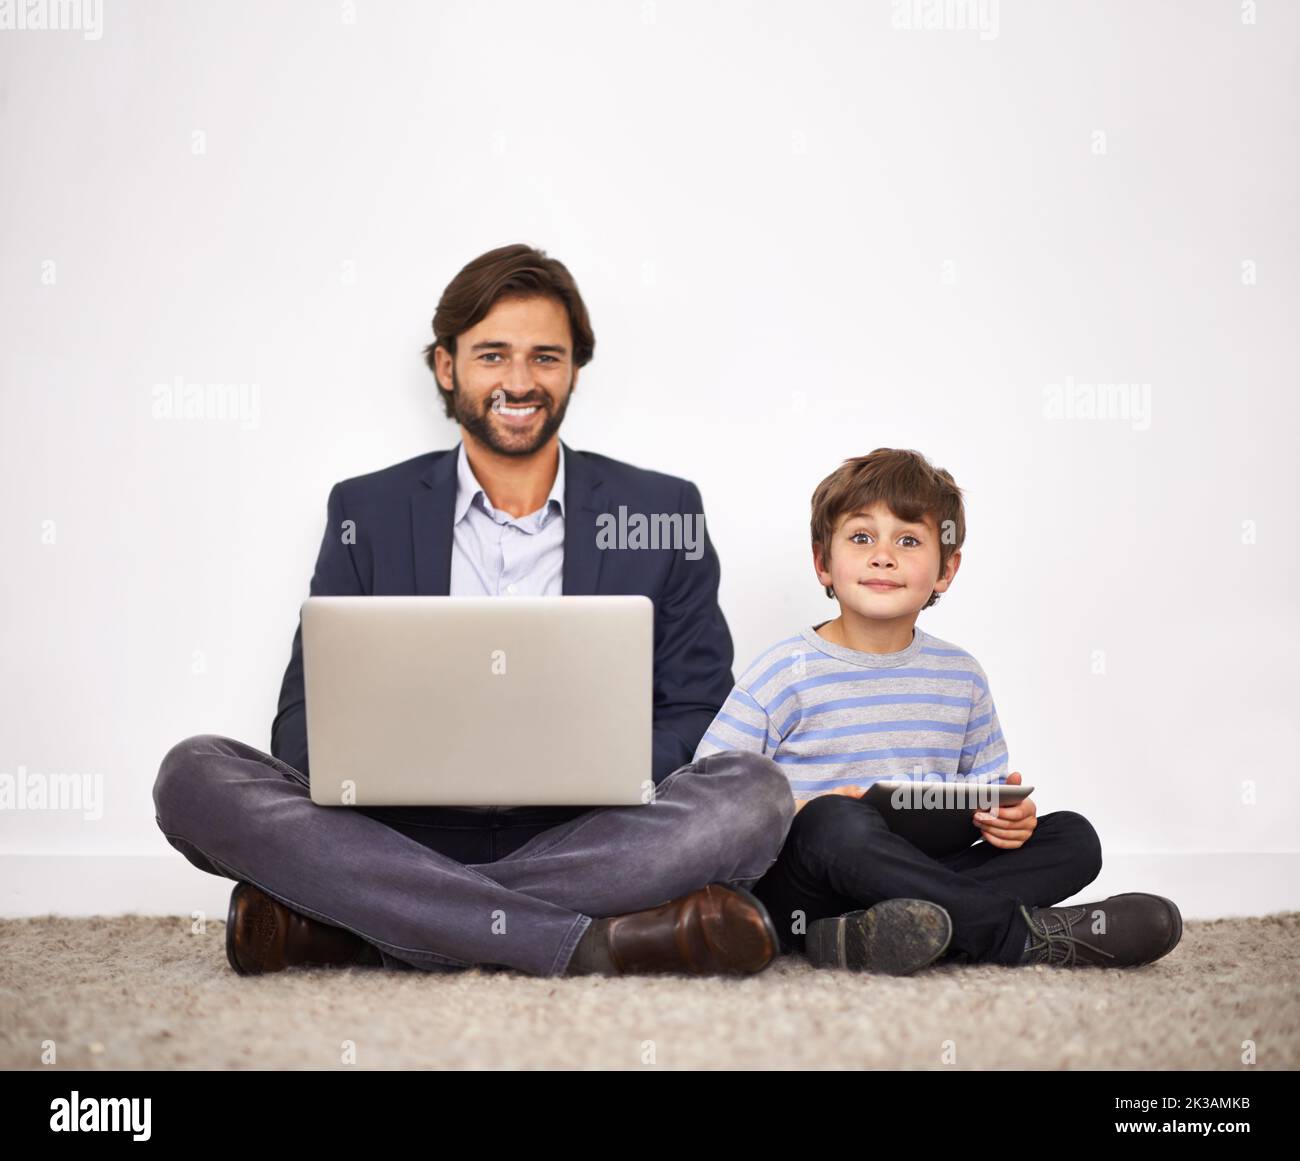 Aumentare la generazione digitale. Un padre e un figlio seduti a terra contro una parete con un notebook e un tablet digitale. Foto Stock